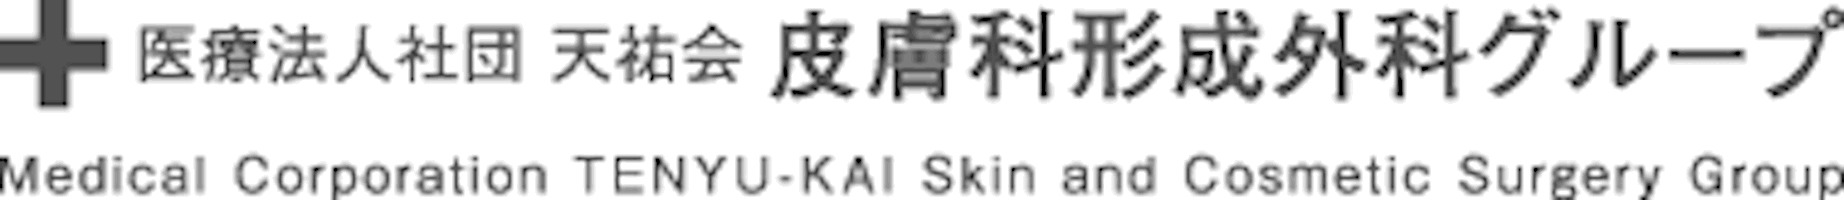 札幌東皮膚科形成外科ロゴ